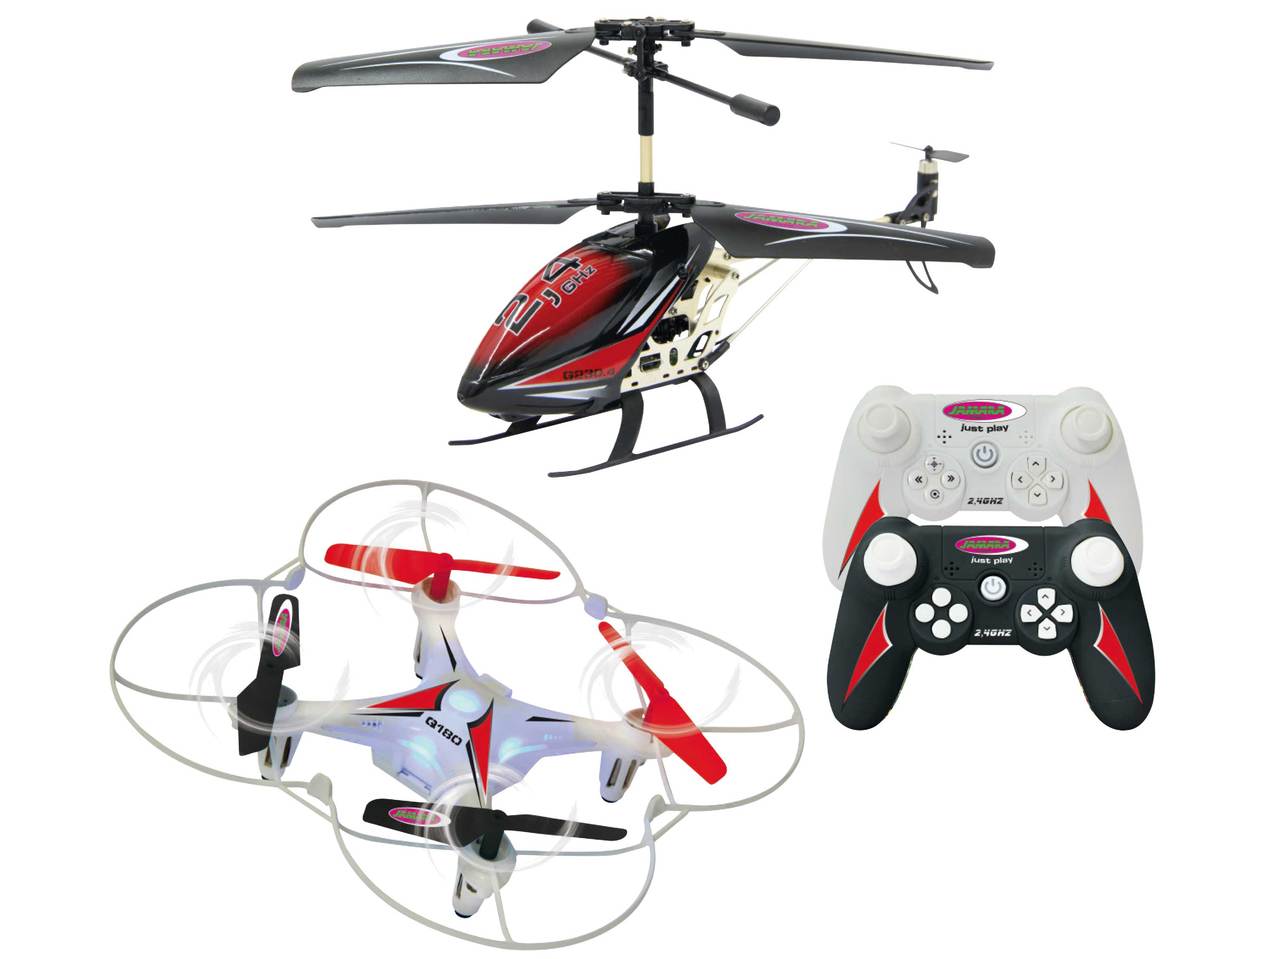 Jamara(R) Kauko-ohjattava helikopteri tai quadrokopteri